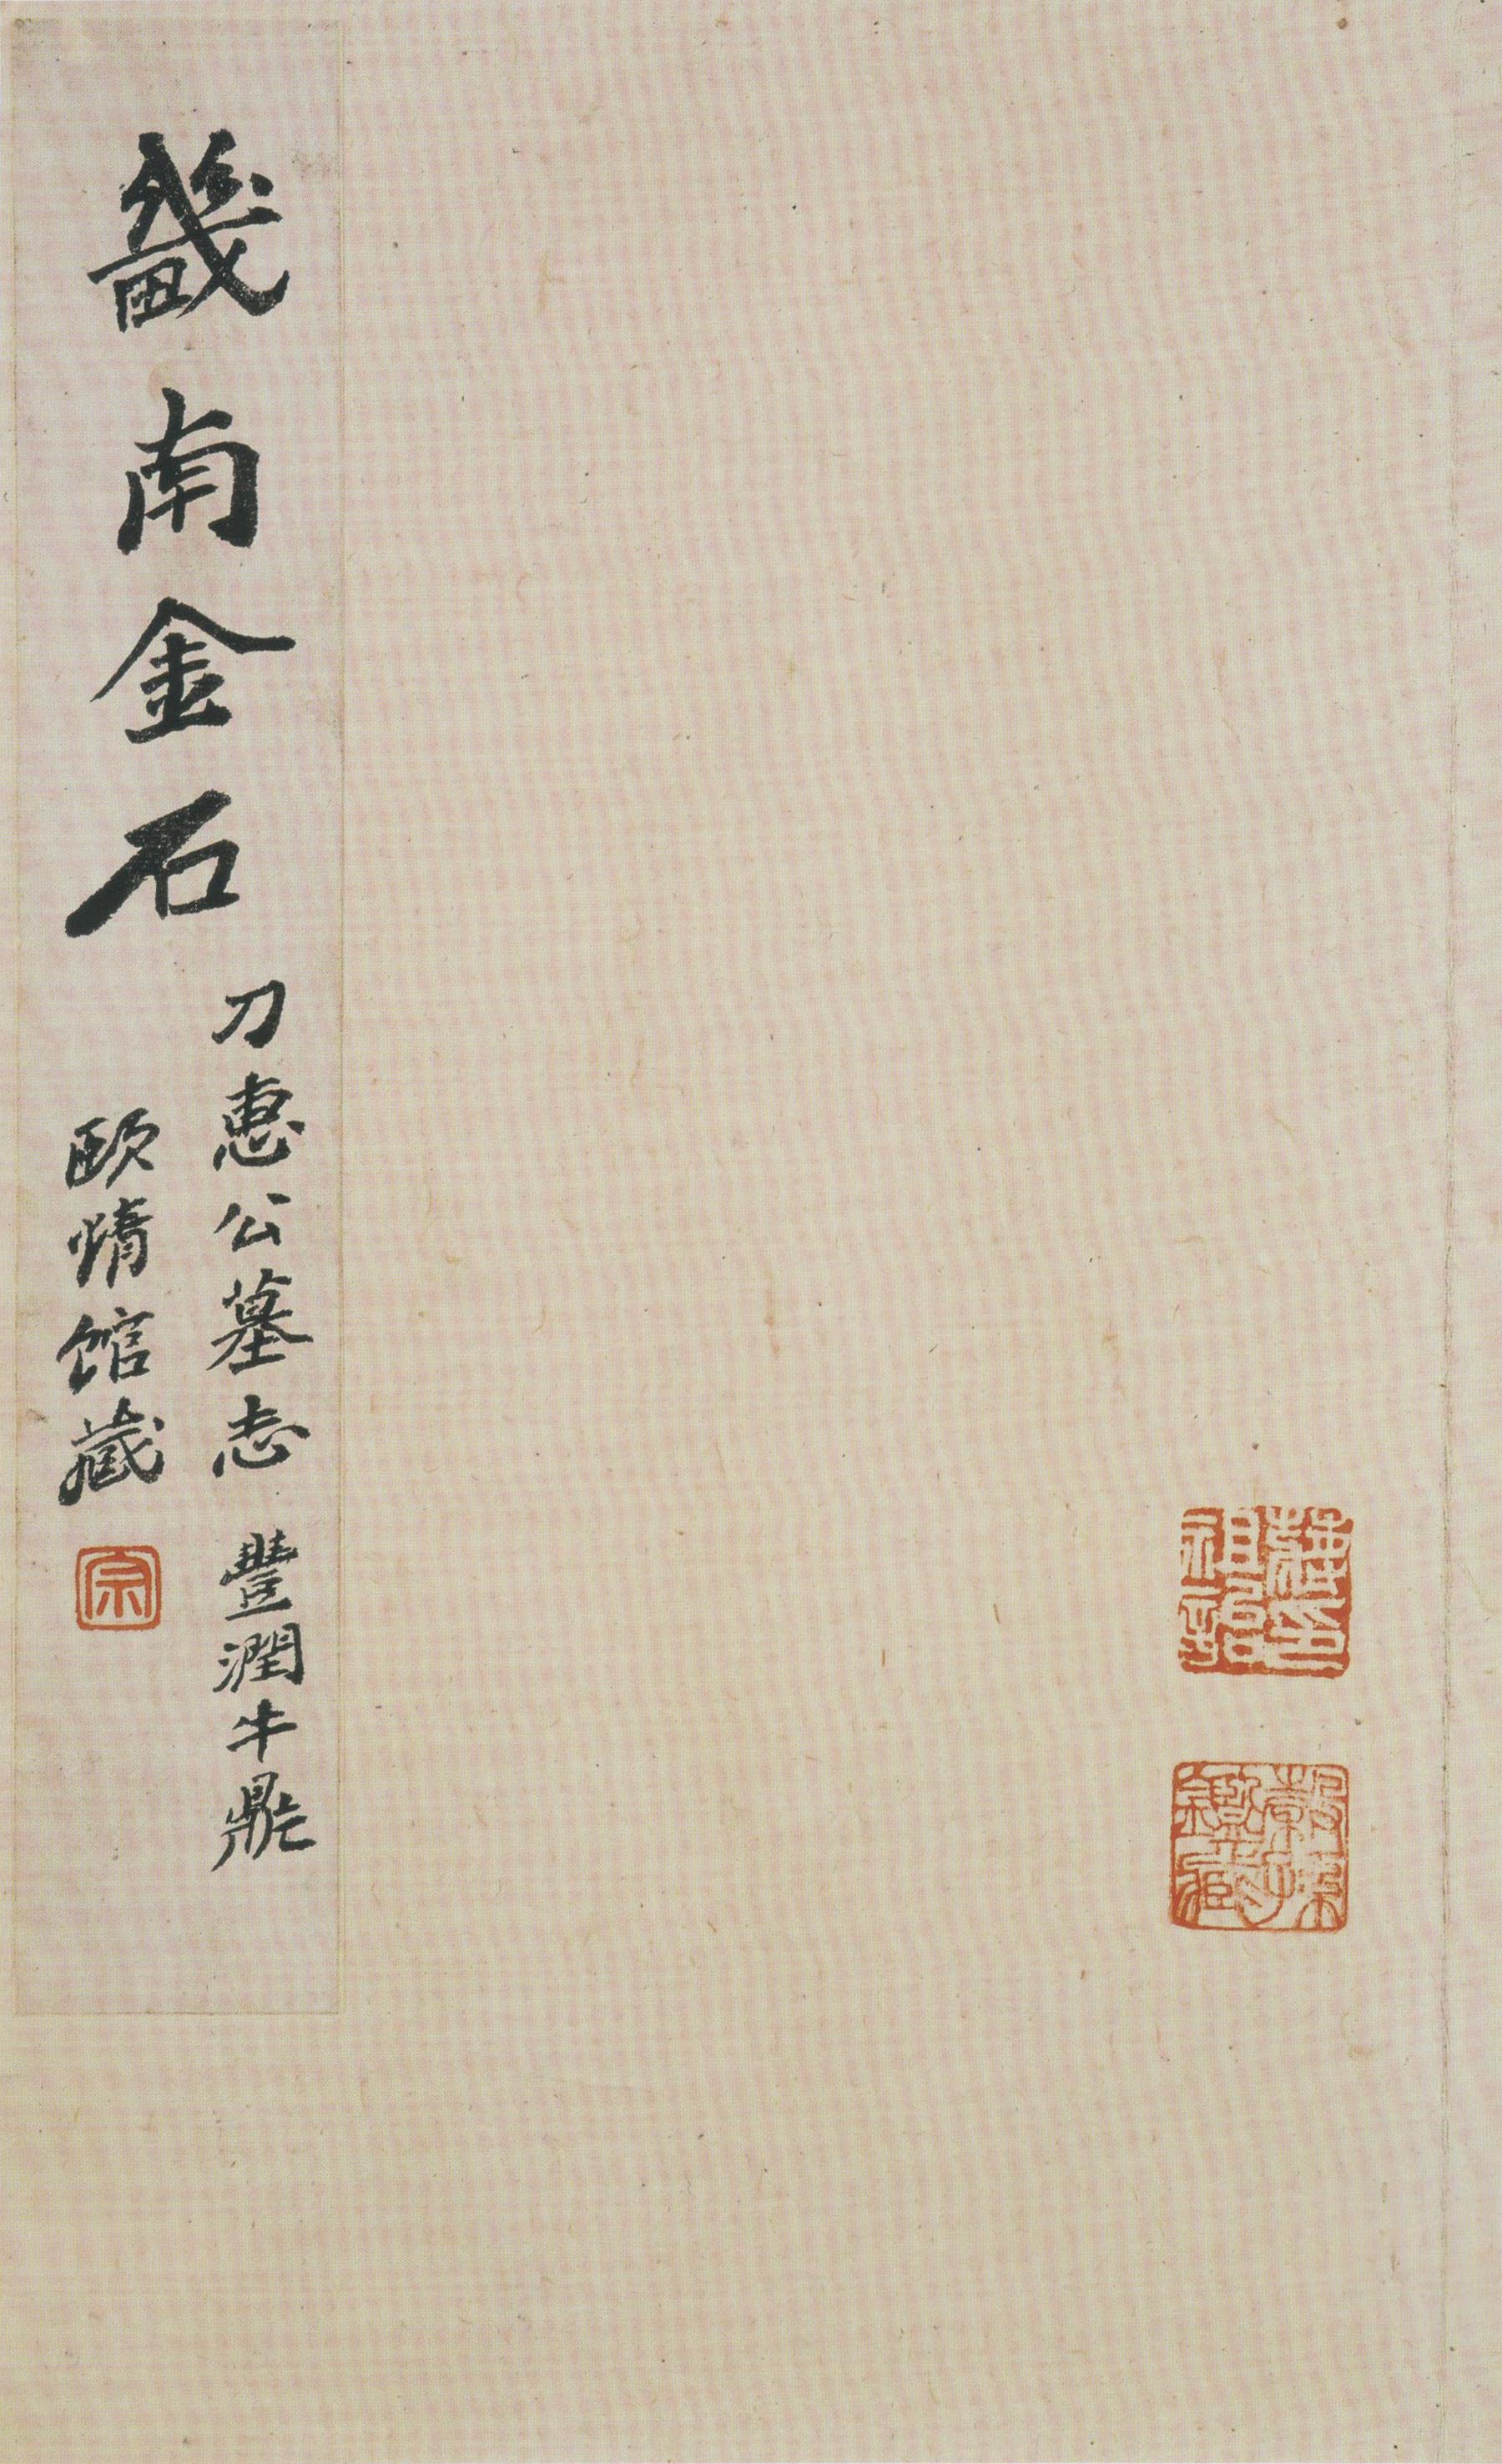 北魏《刁遵墓志》题签与题跋(图2)